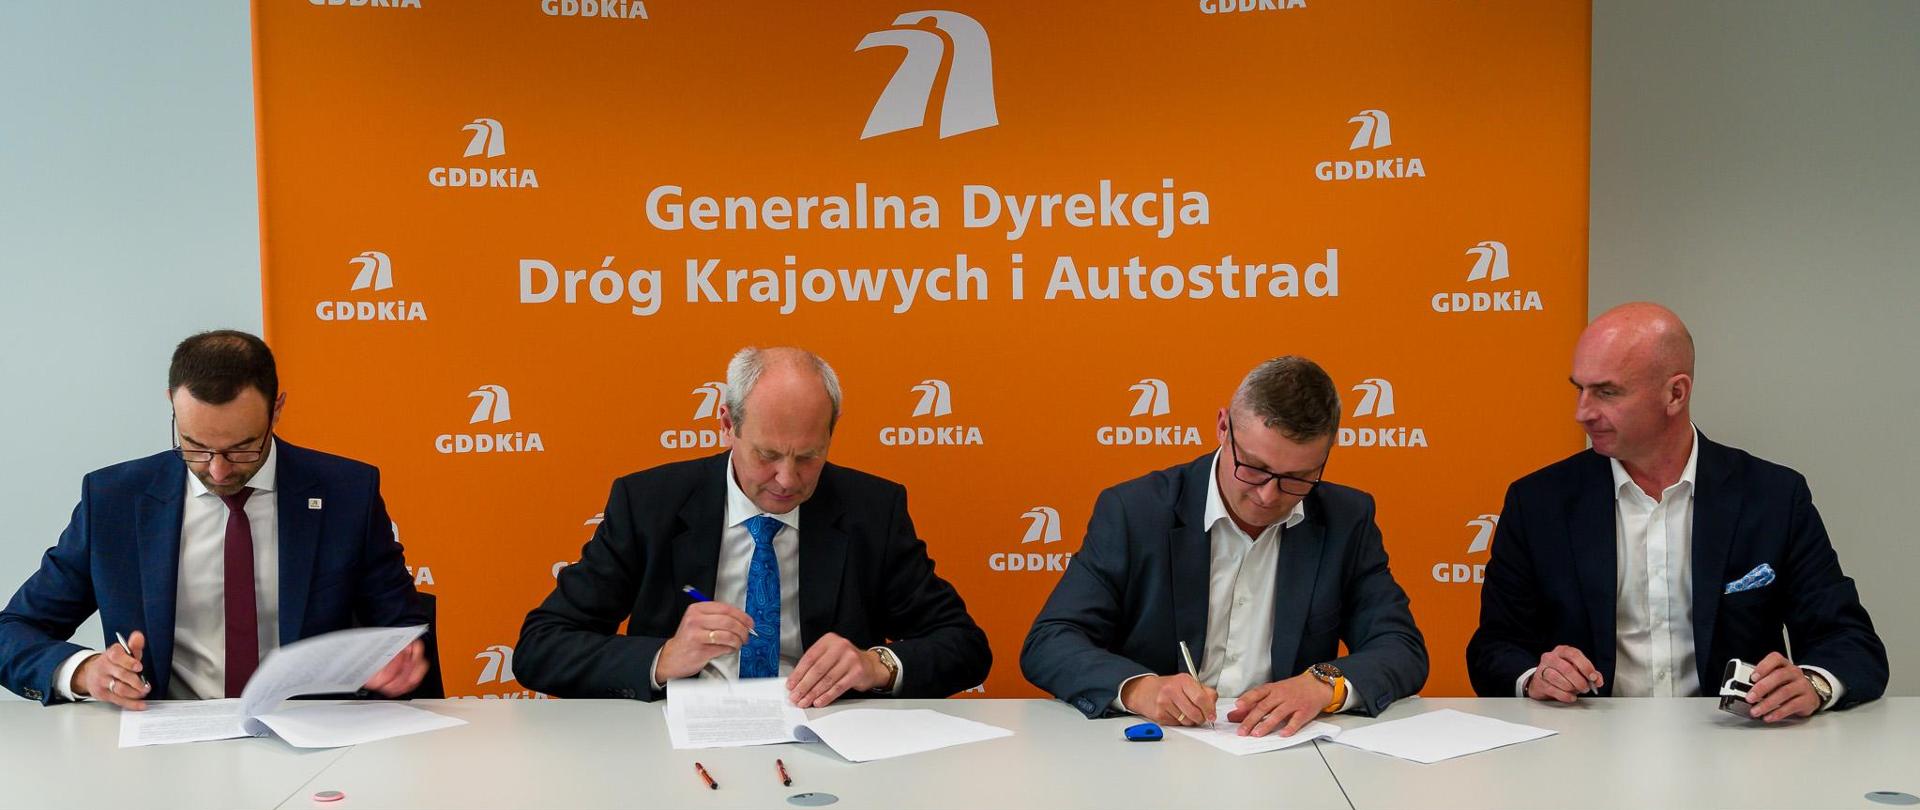 Moment podpisania jednego z 18 aneksów waloryzacyjnych. 4 elegancko ubranych mężczyzn siedzących obok siebie podpisuje dokumenty. W tle pomarańczowa ścianka z logotypami i nazwą GDDKiA.